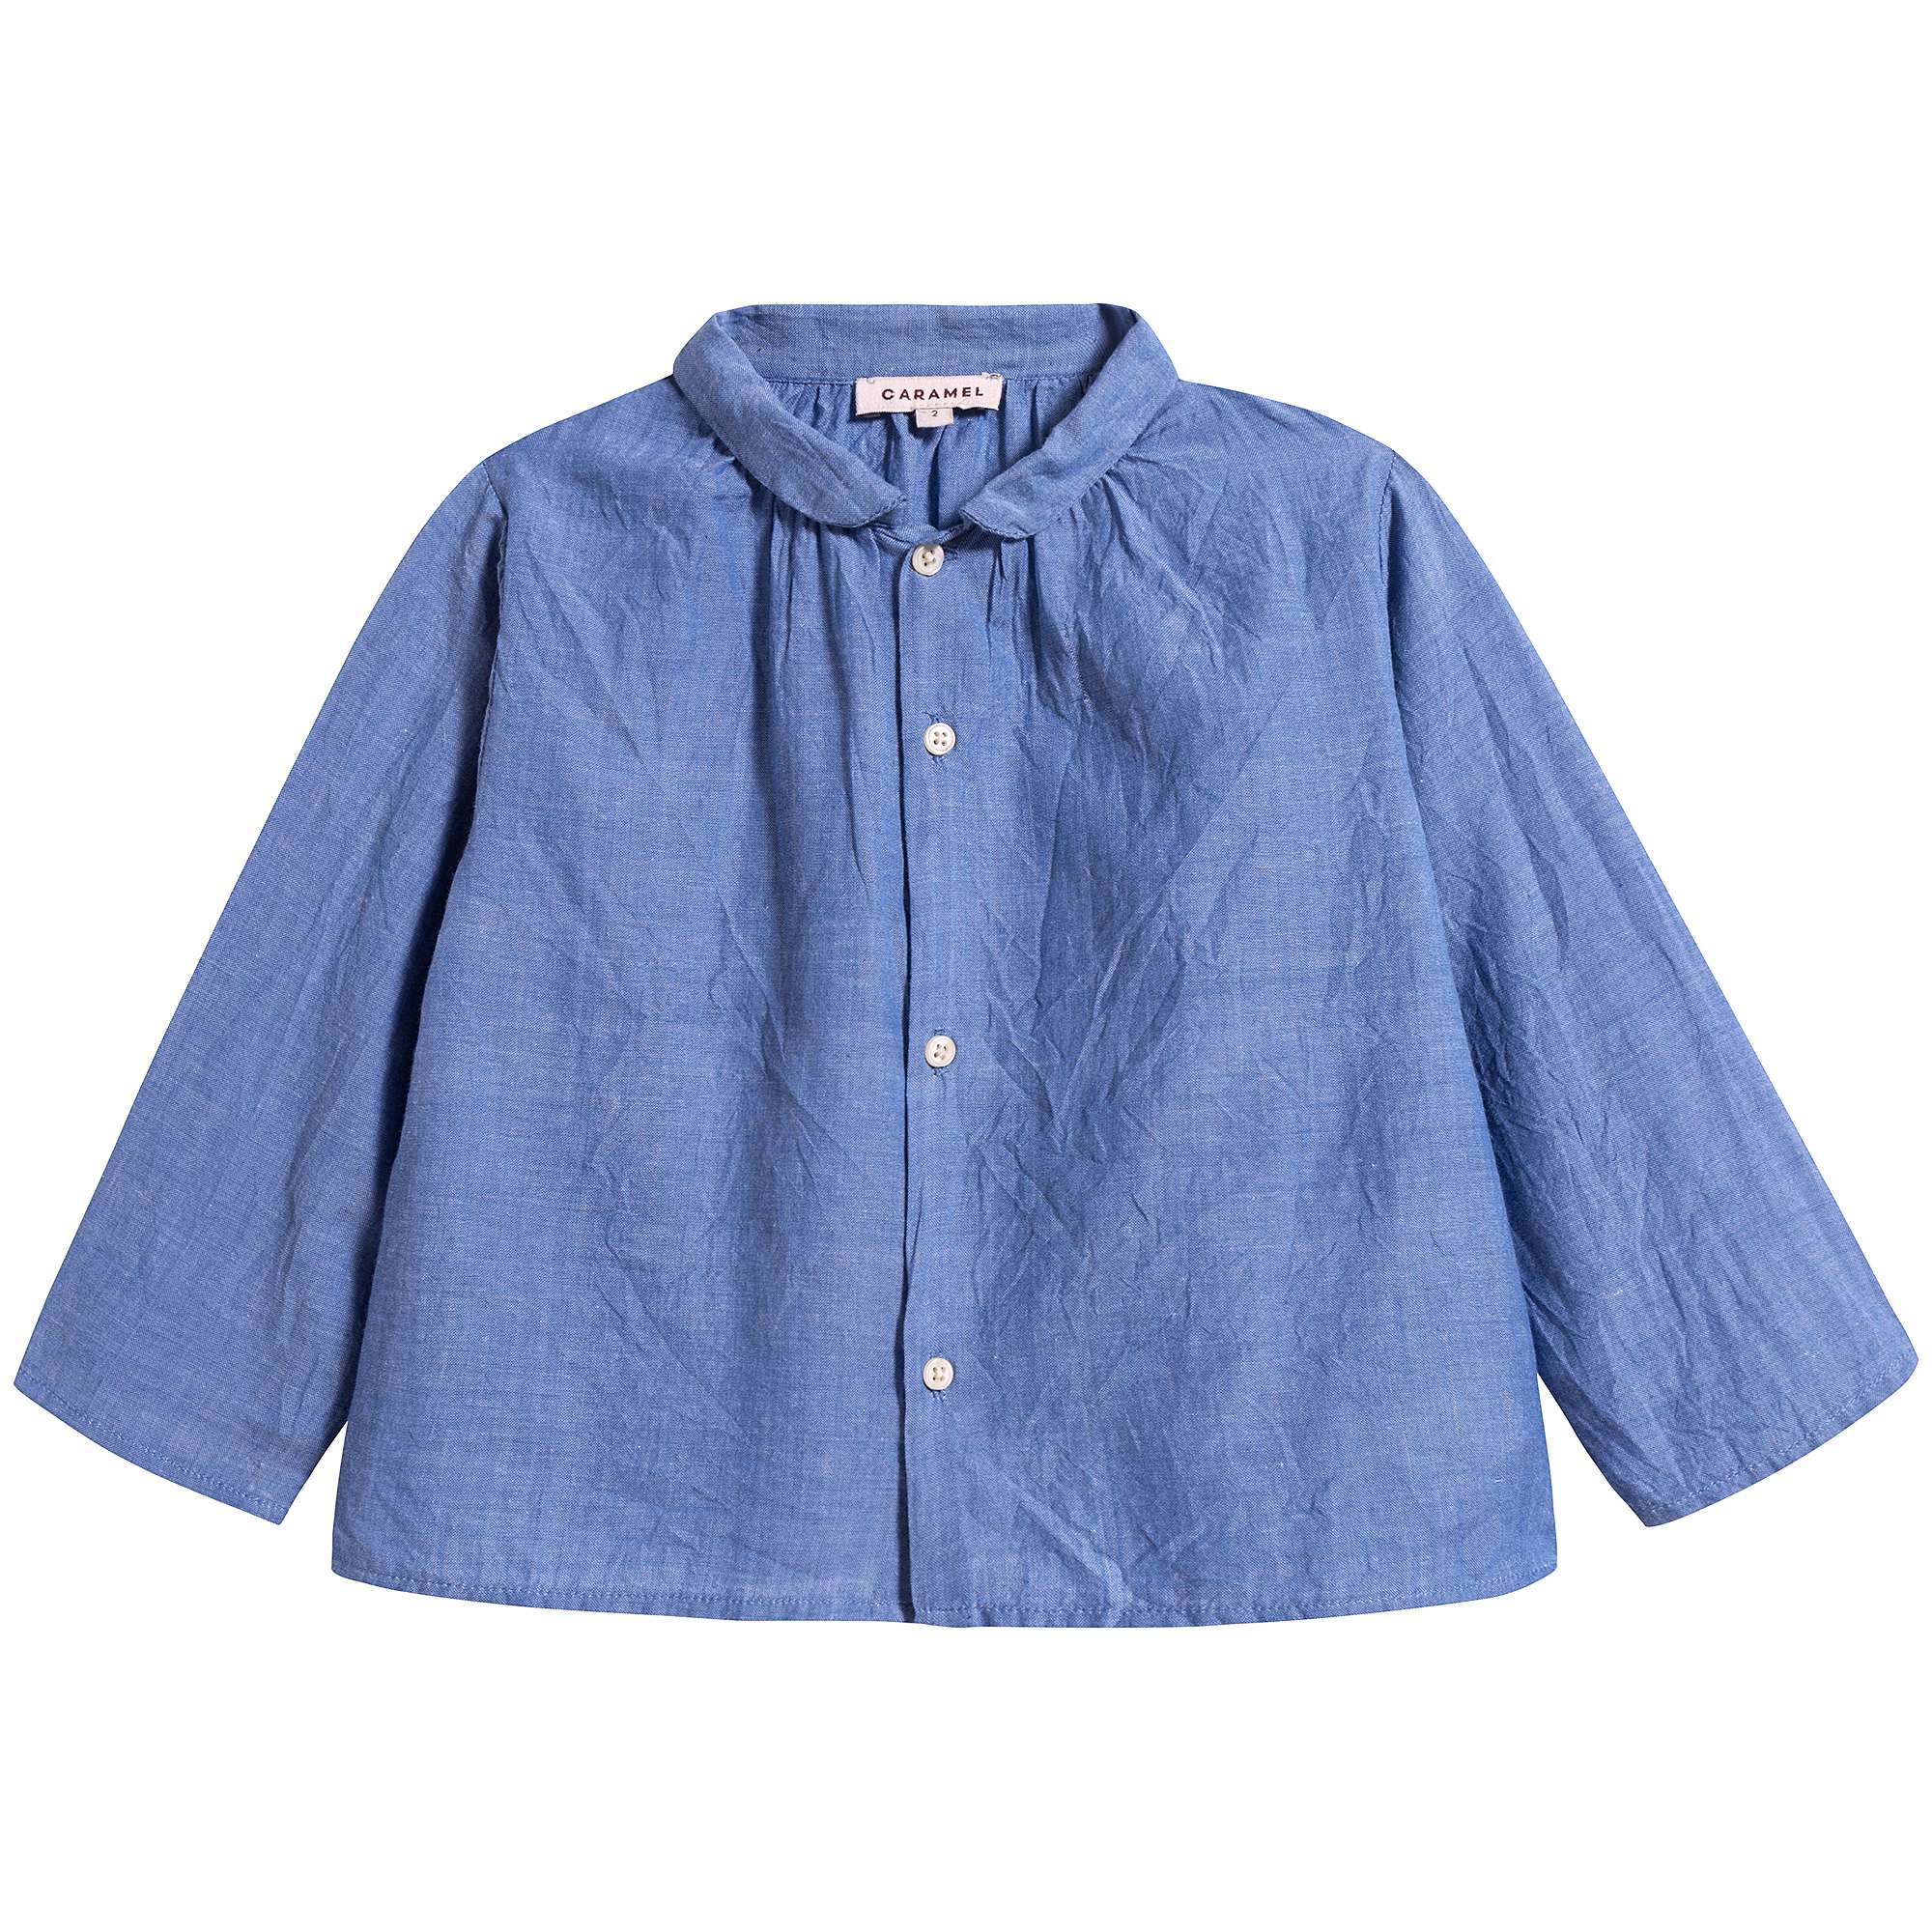 Baby Cornflower Blue Cotton Shirt